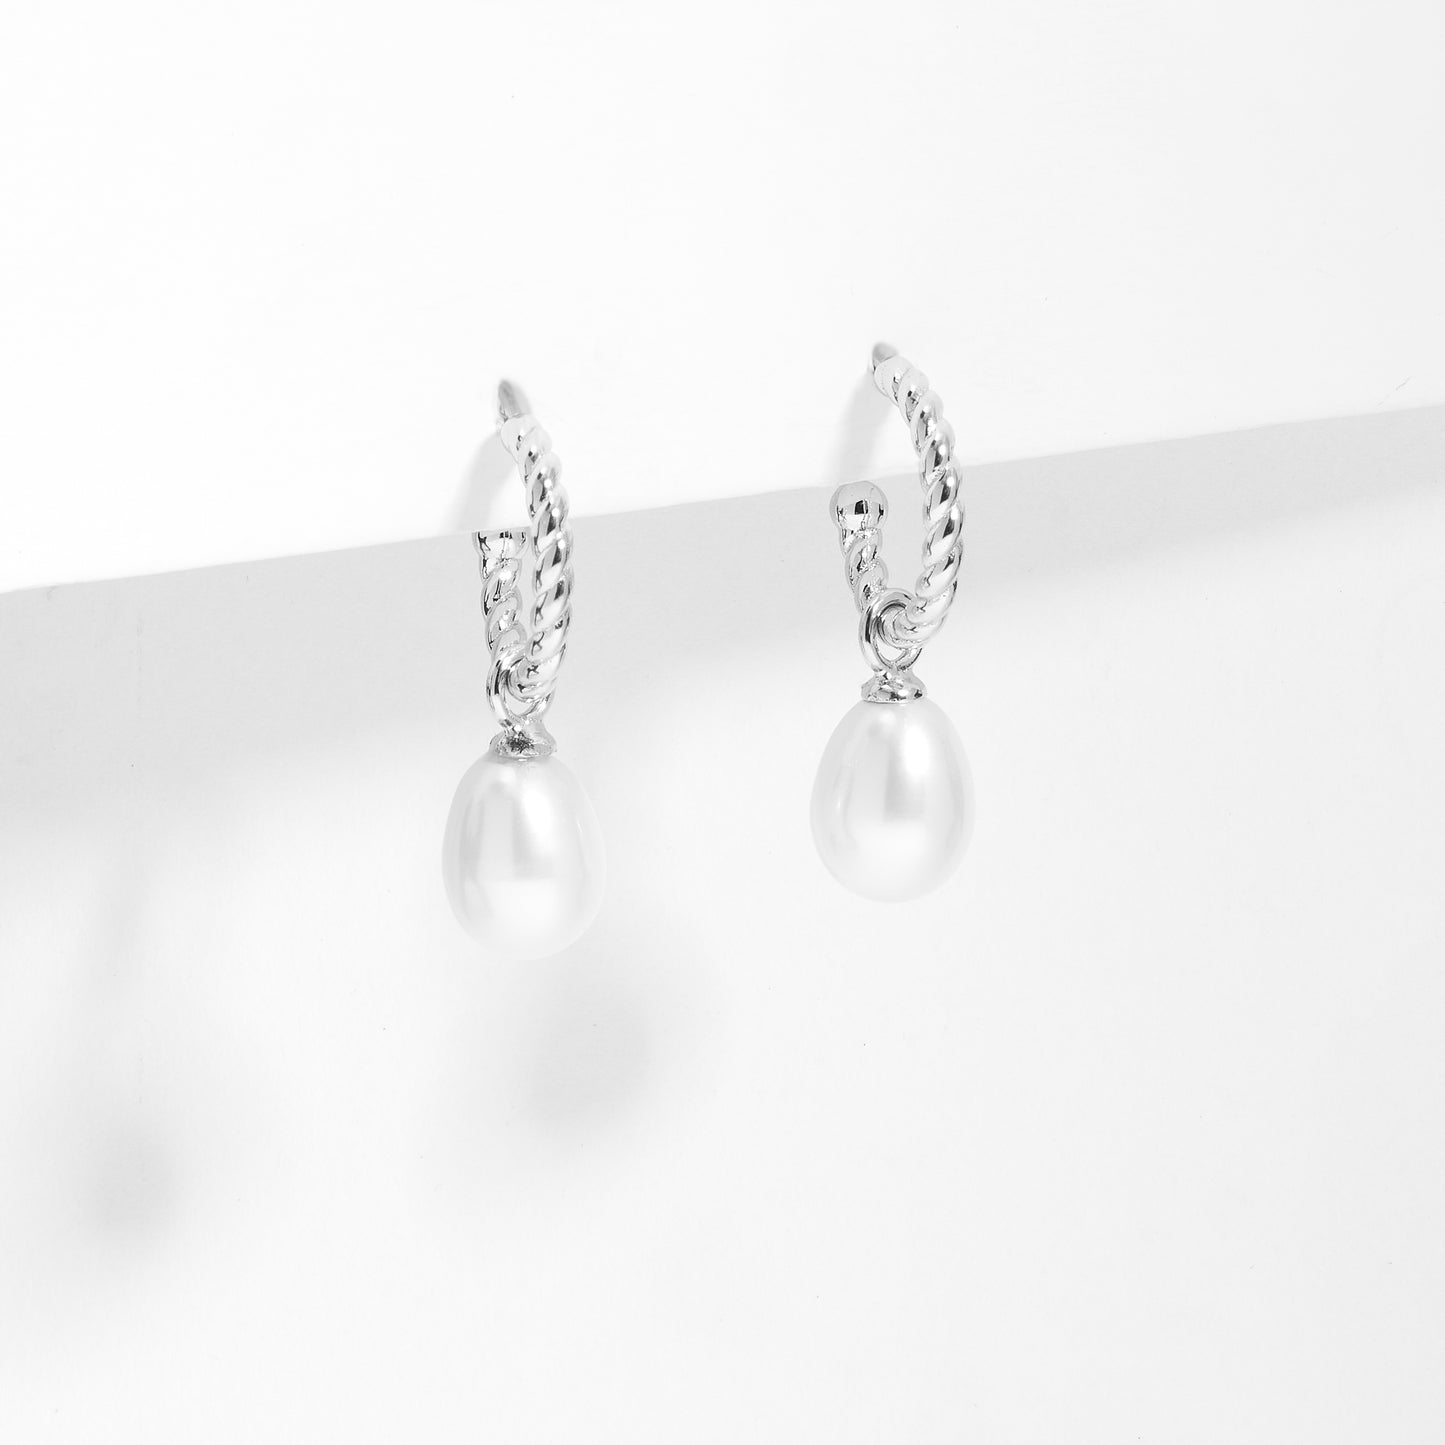 Sterling Silver Twist Hoop Earrings With Freshwater Pearl Drop